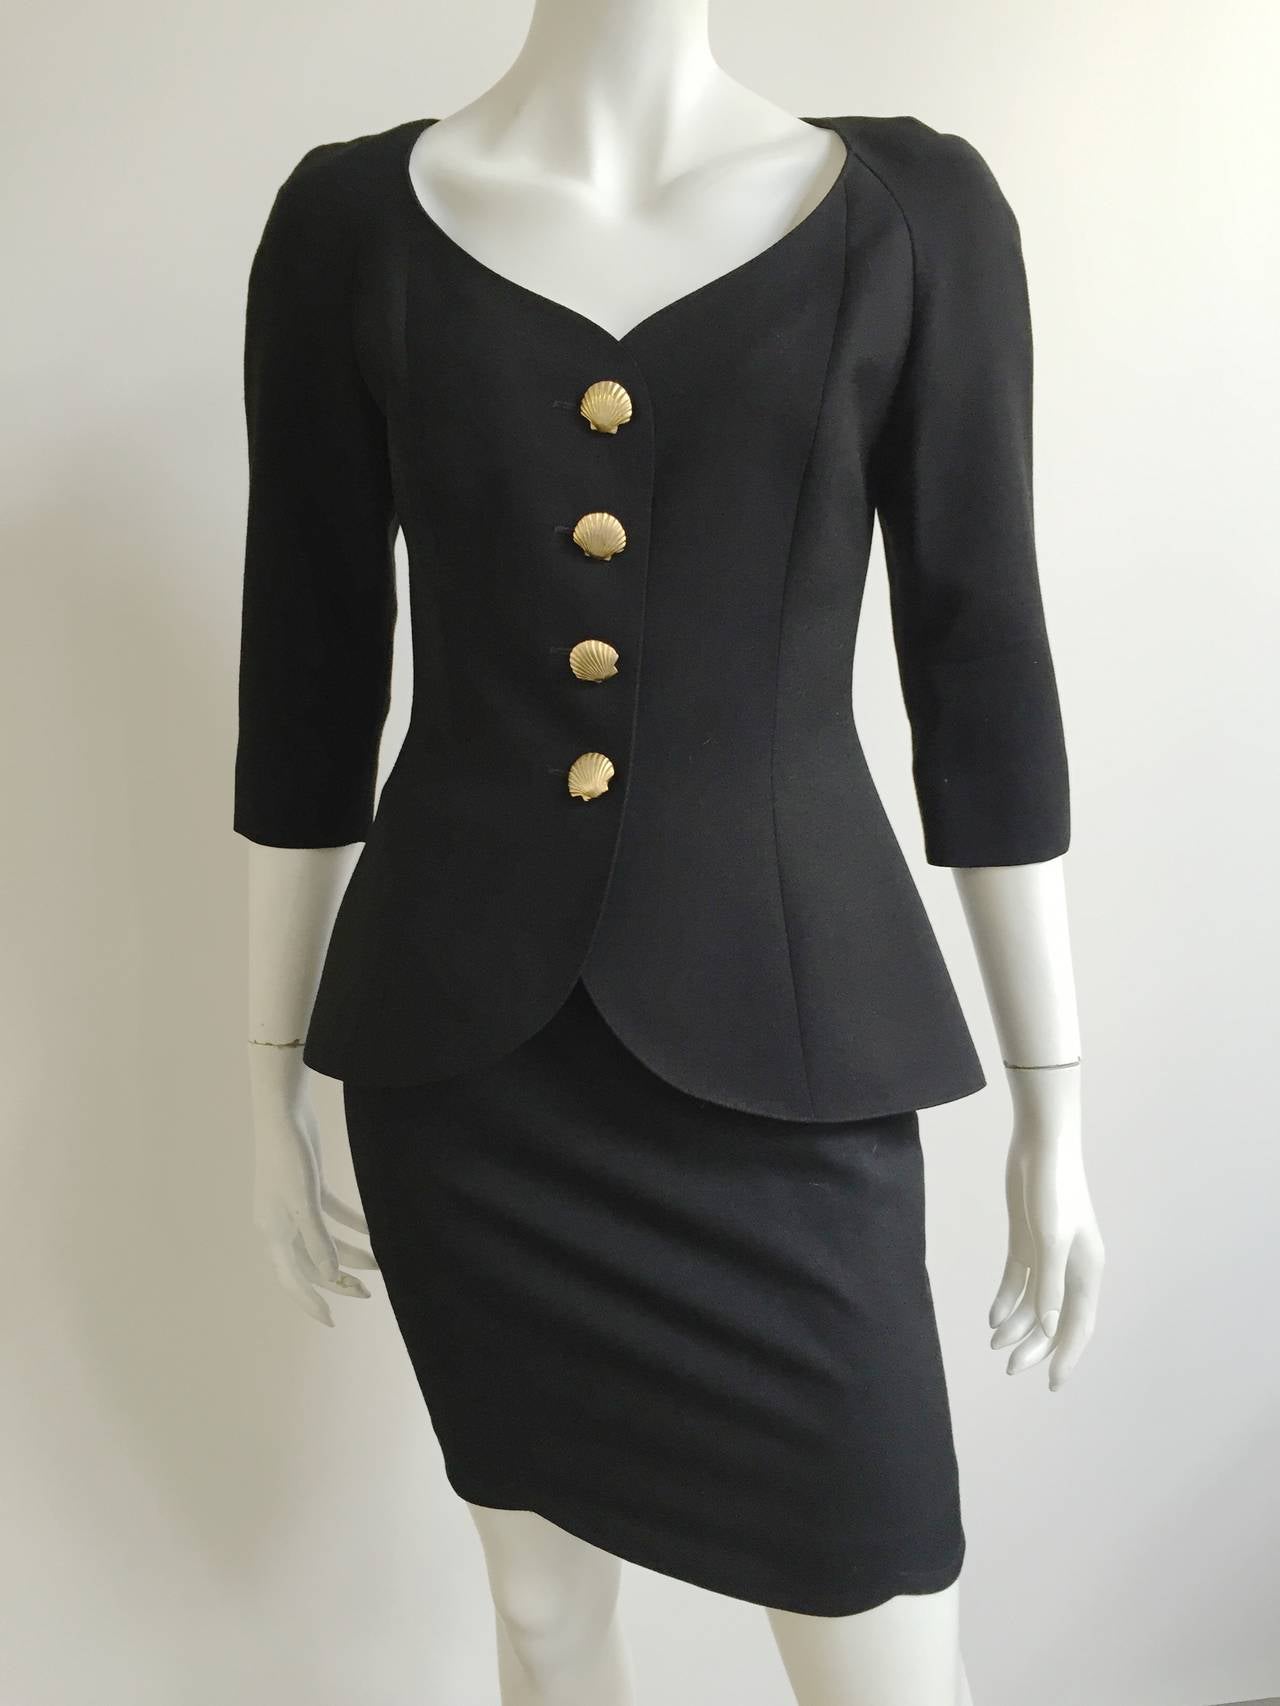 Lolita Lempicka Paris 80s black skirt suit size 4. 6